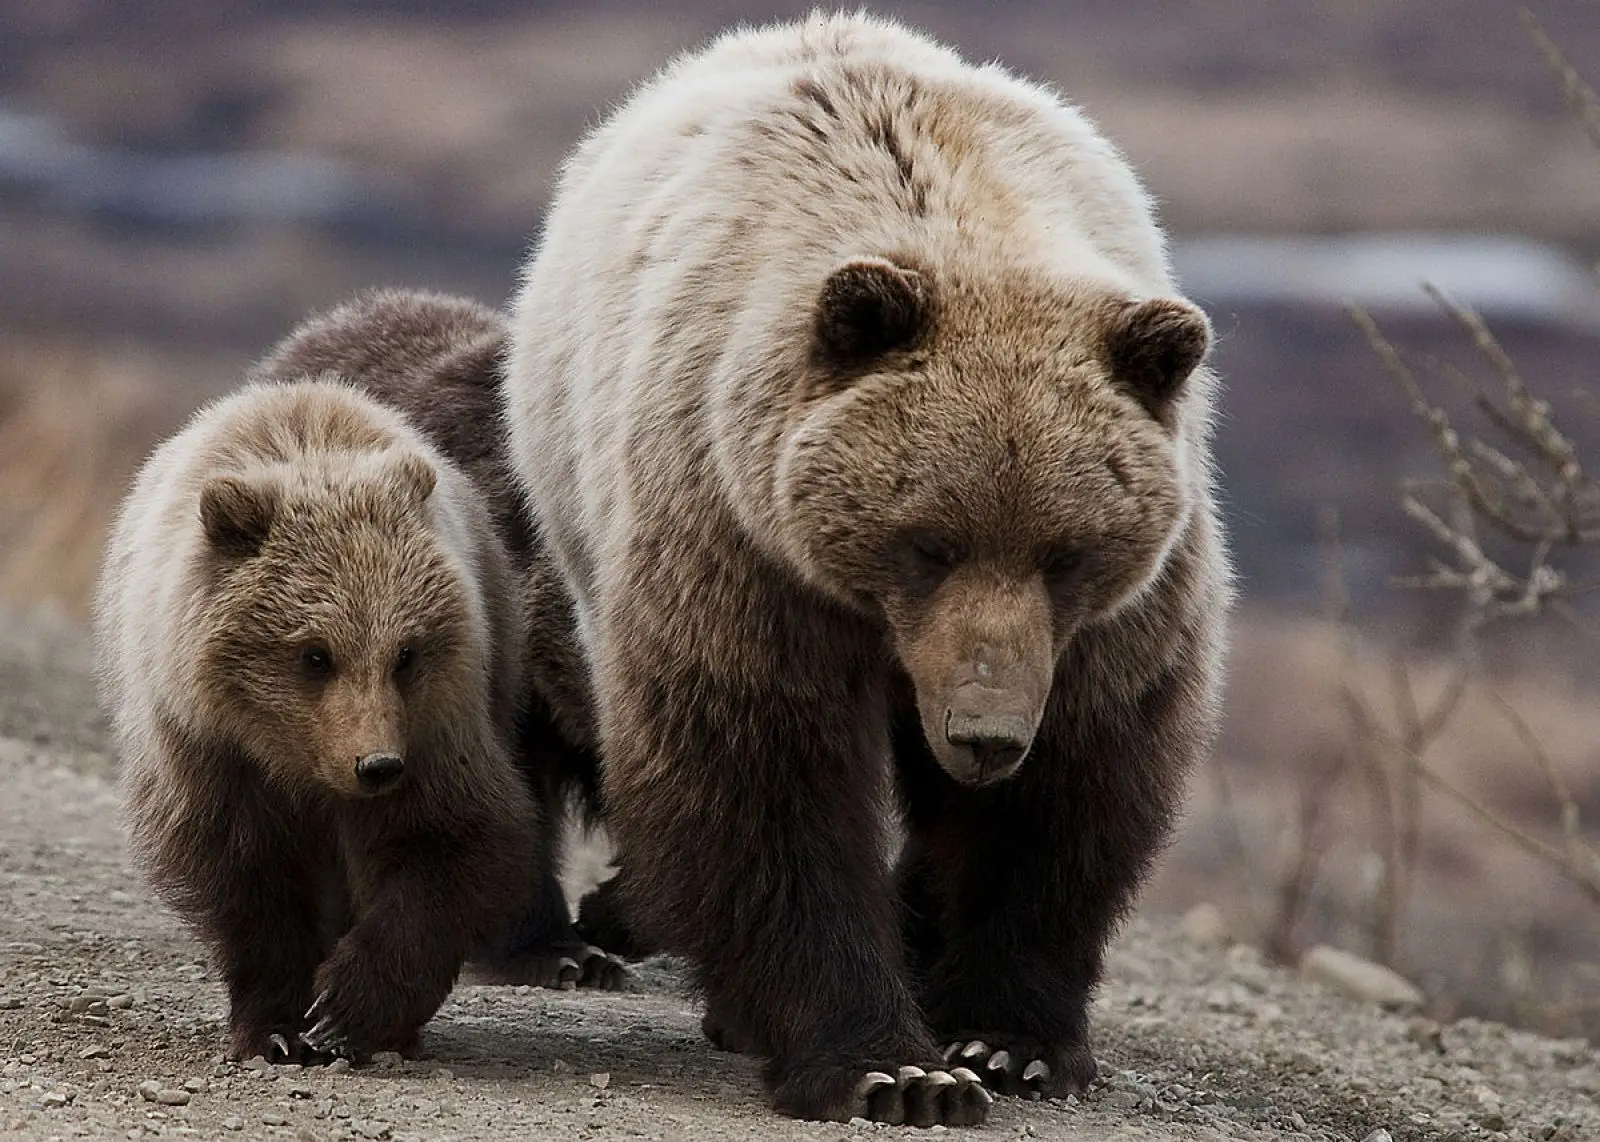 Post successivo: Abbattimento orsi pericolosi: il via libera al decreto in Trentino